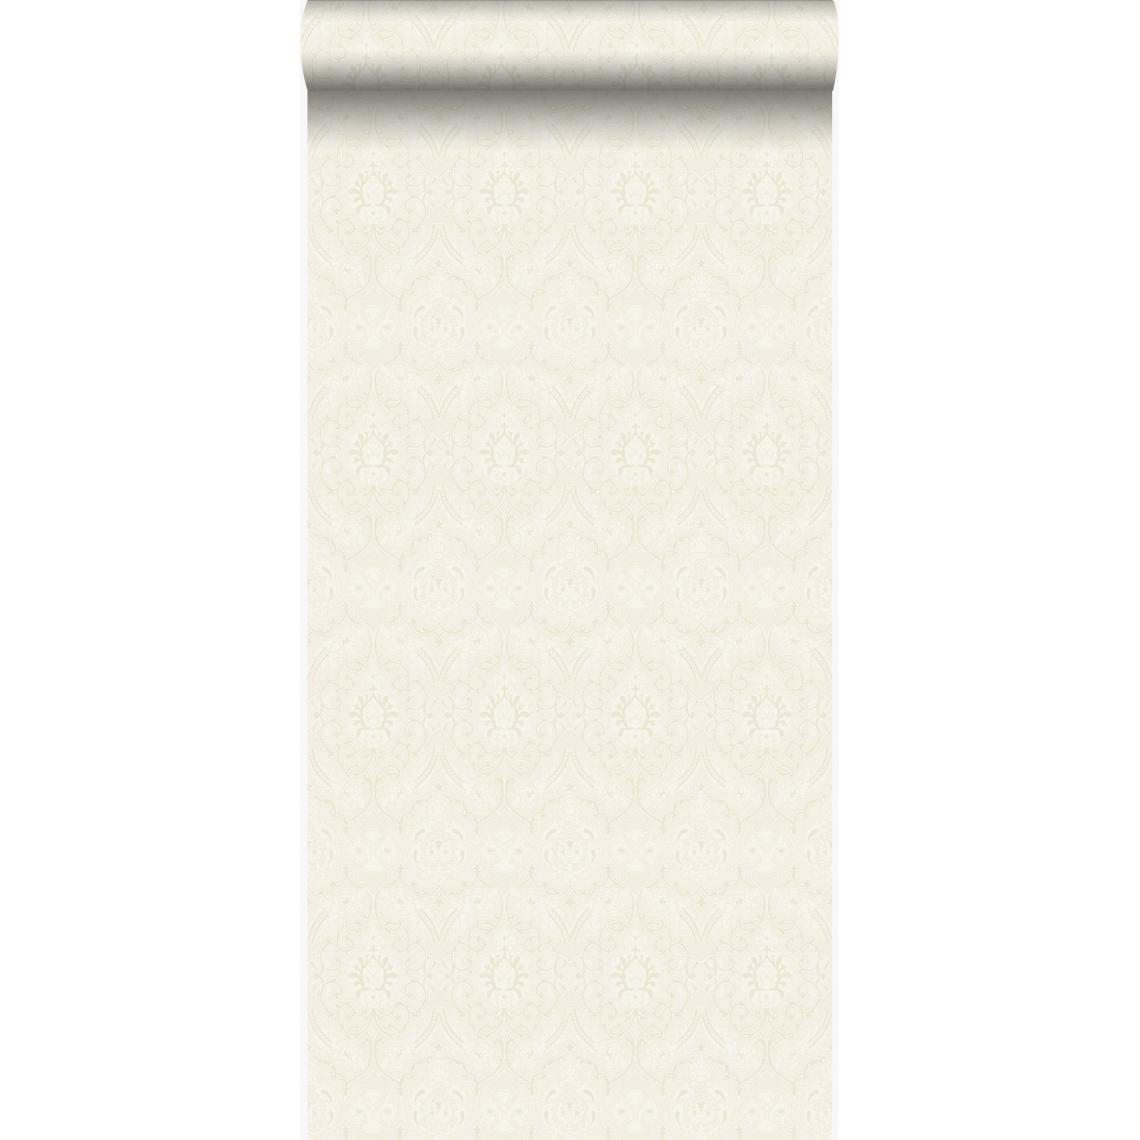 Origin - Origin papier peint ornement blanc cassé - 346241 - 53 cm x 10,05 m - Papier peint